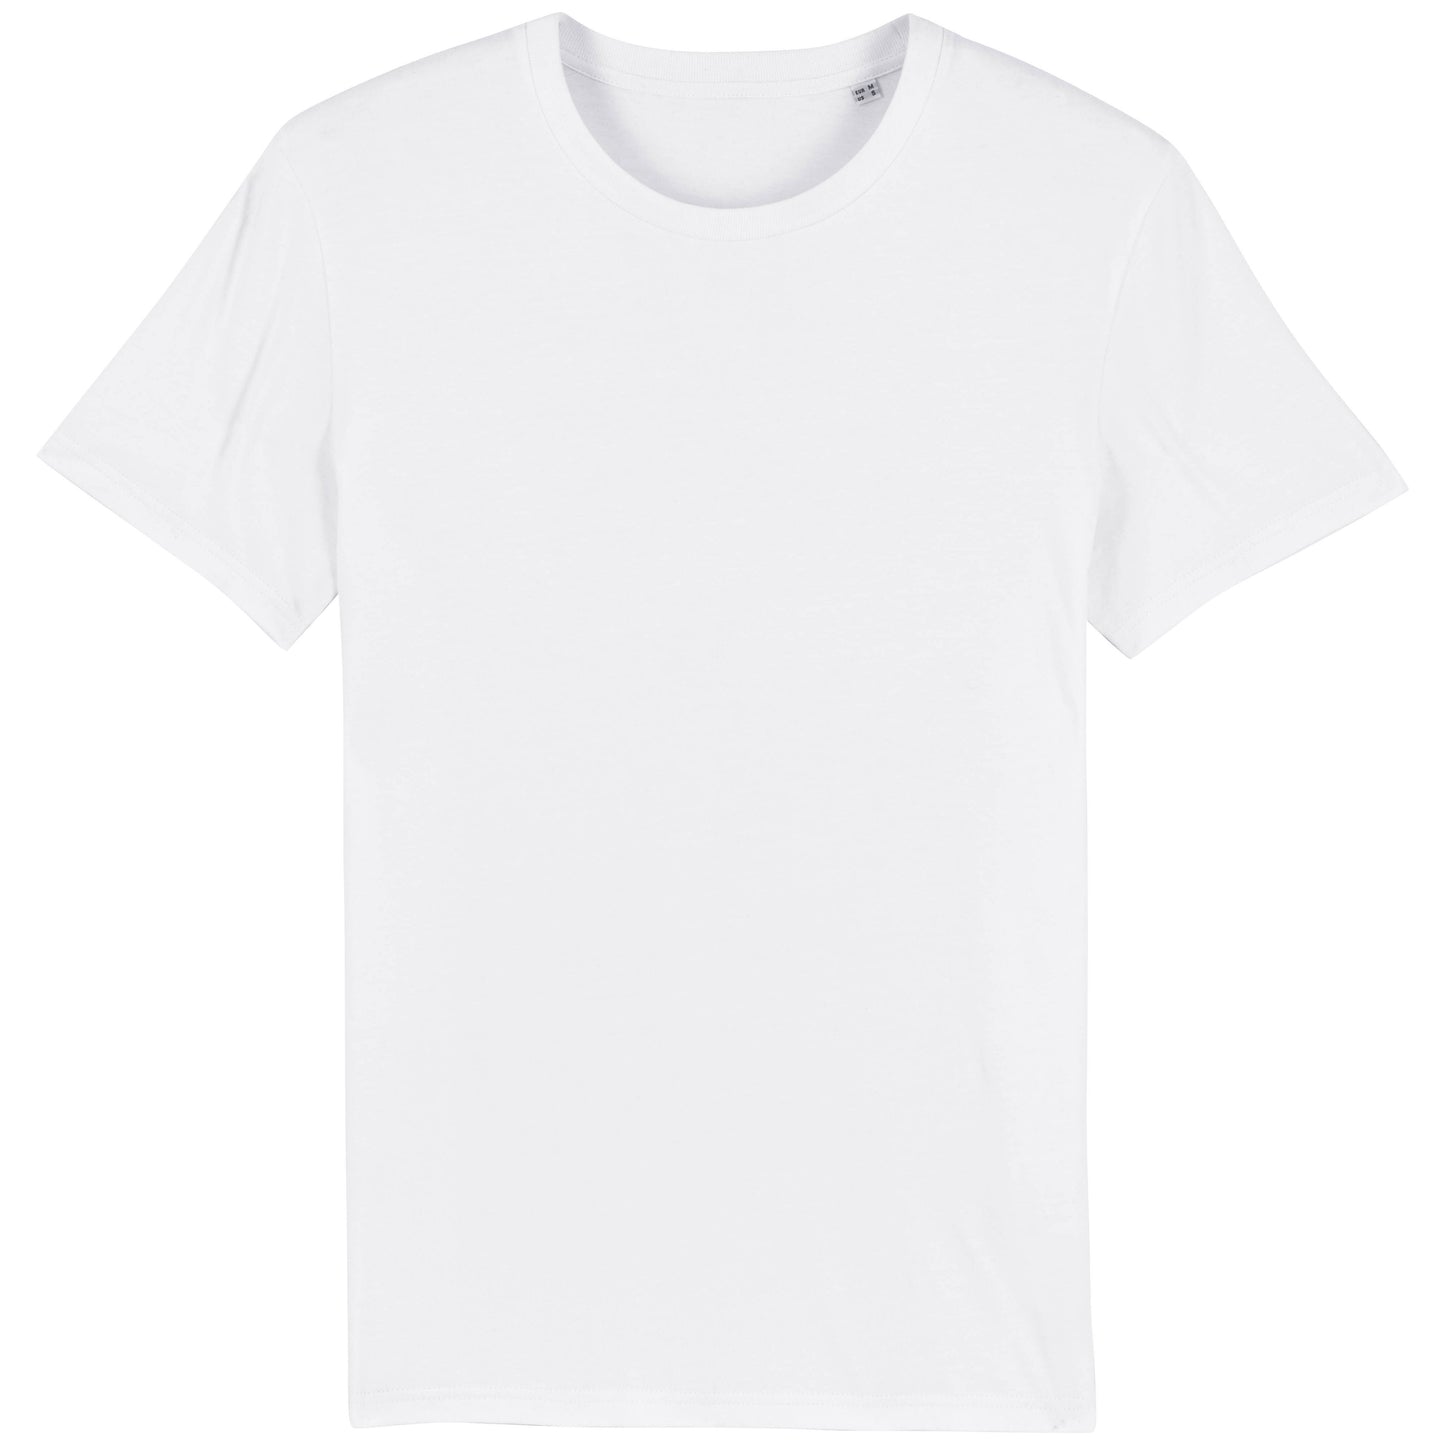 VINO VINO VINO - Unisex Organic Shirt